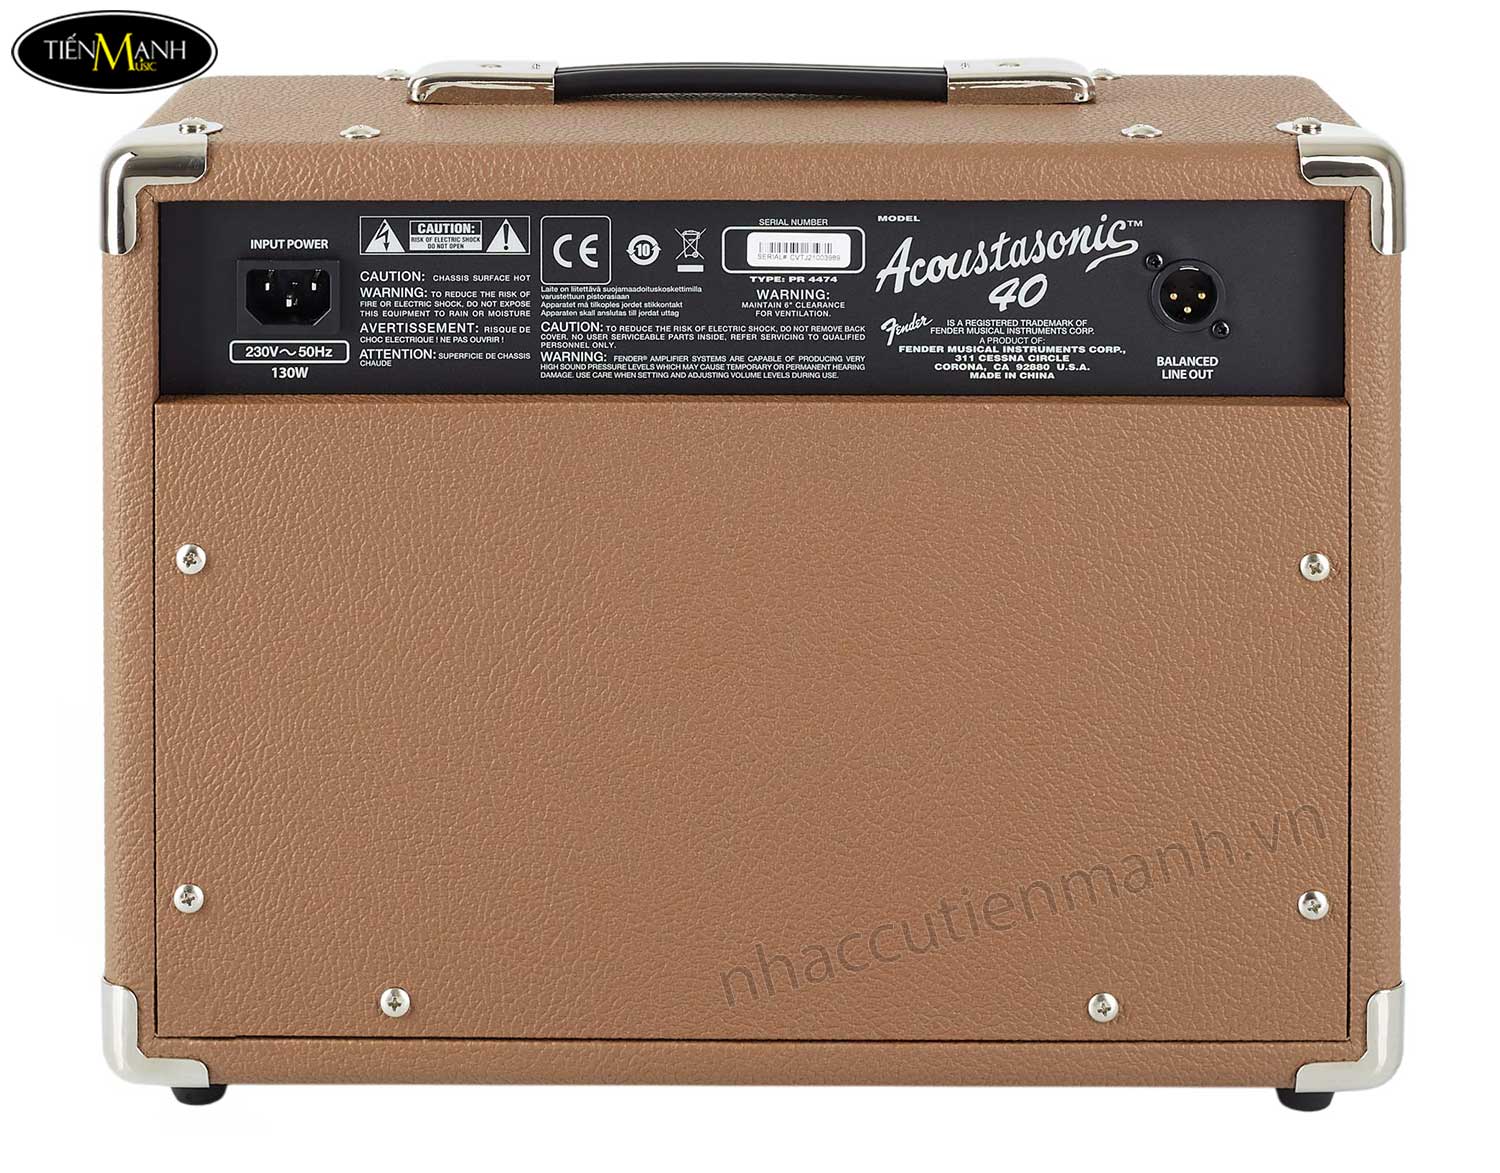 amplifier-fender-acoustasonic-40-230v-eu